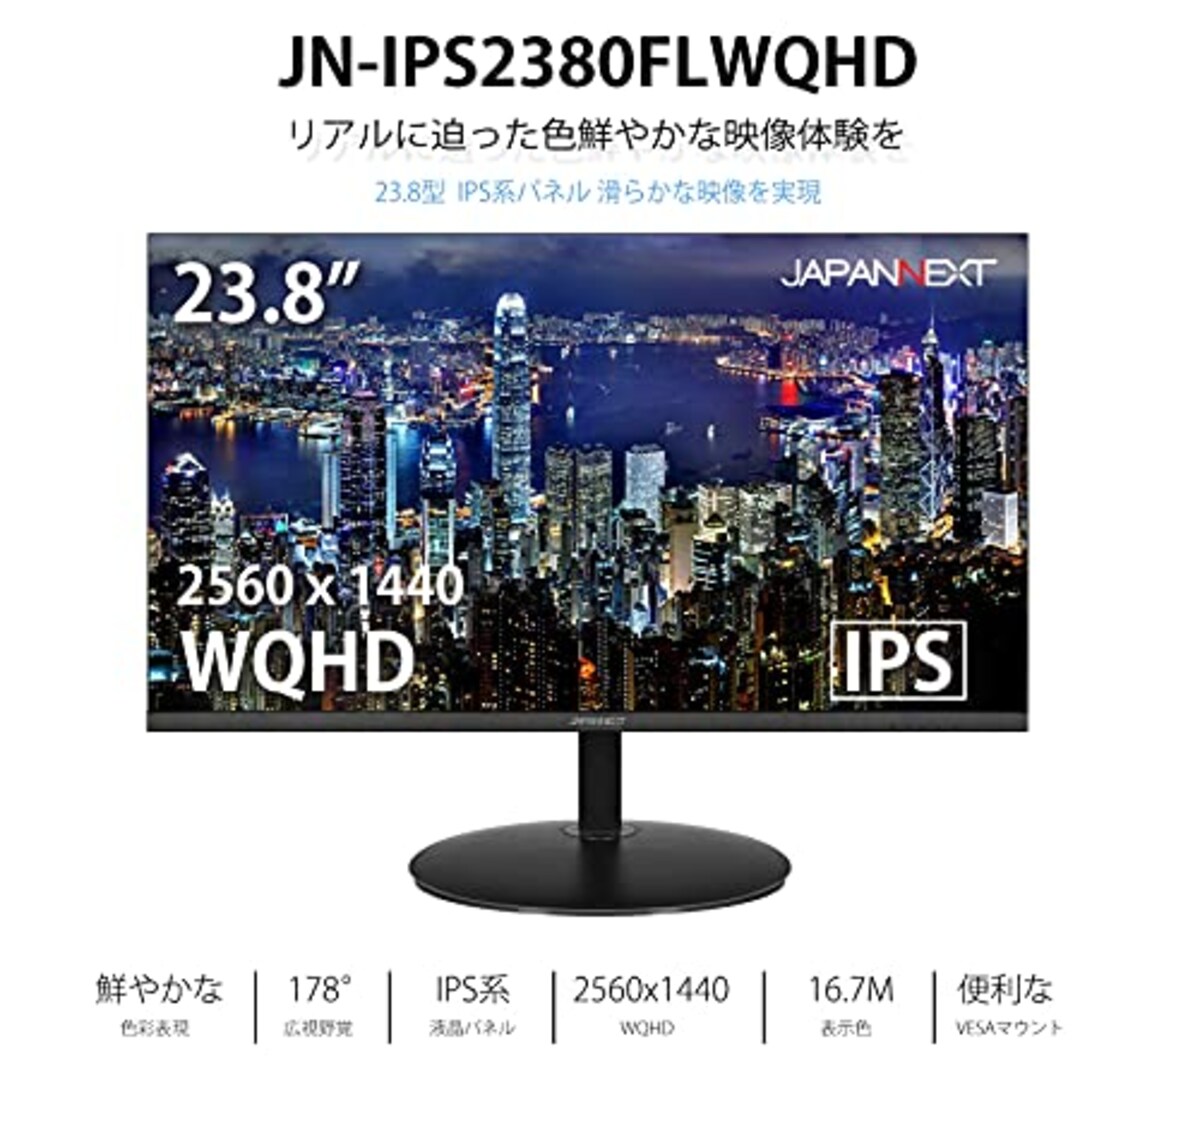  JN-IPS2380FLWQHD 23.8インチ液晶ディスプレイ フレームレス WQHD PCモニター画像2 